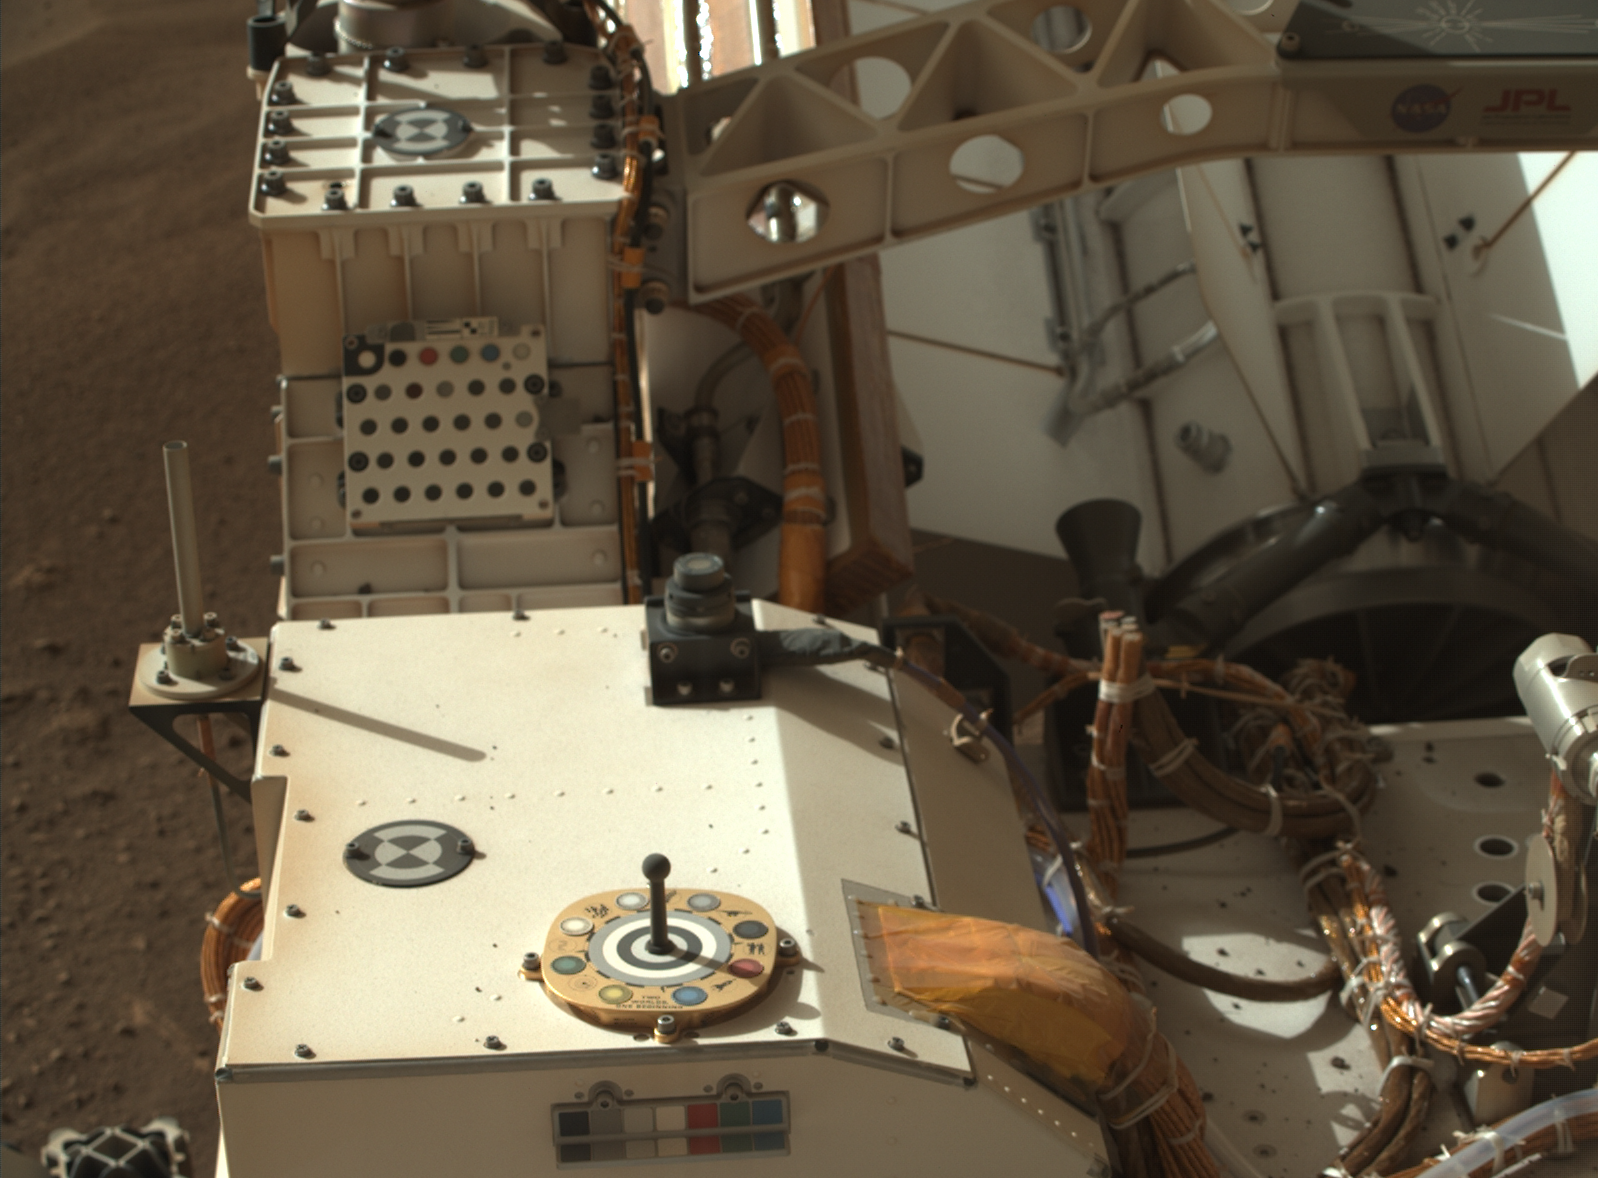 A partial view of the rover's deck. (Image: NASA/JPL-Caltech/ASU)